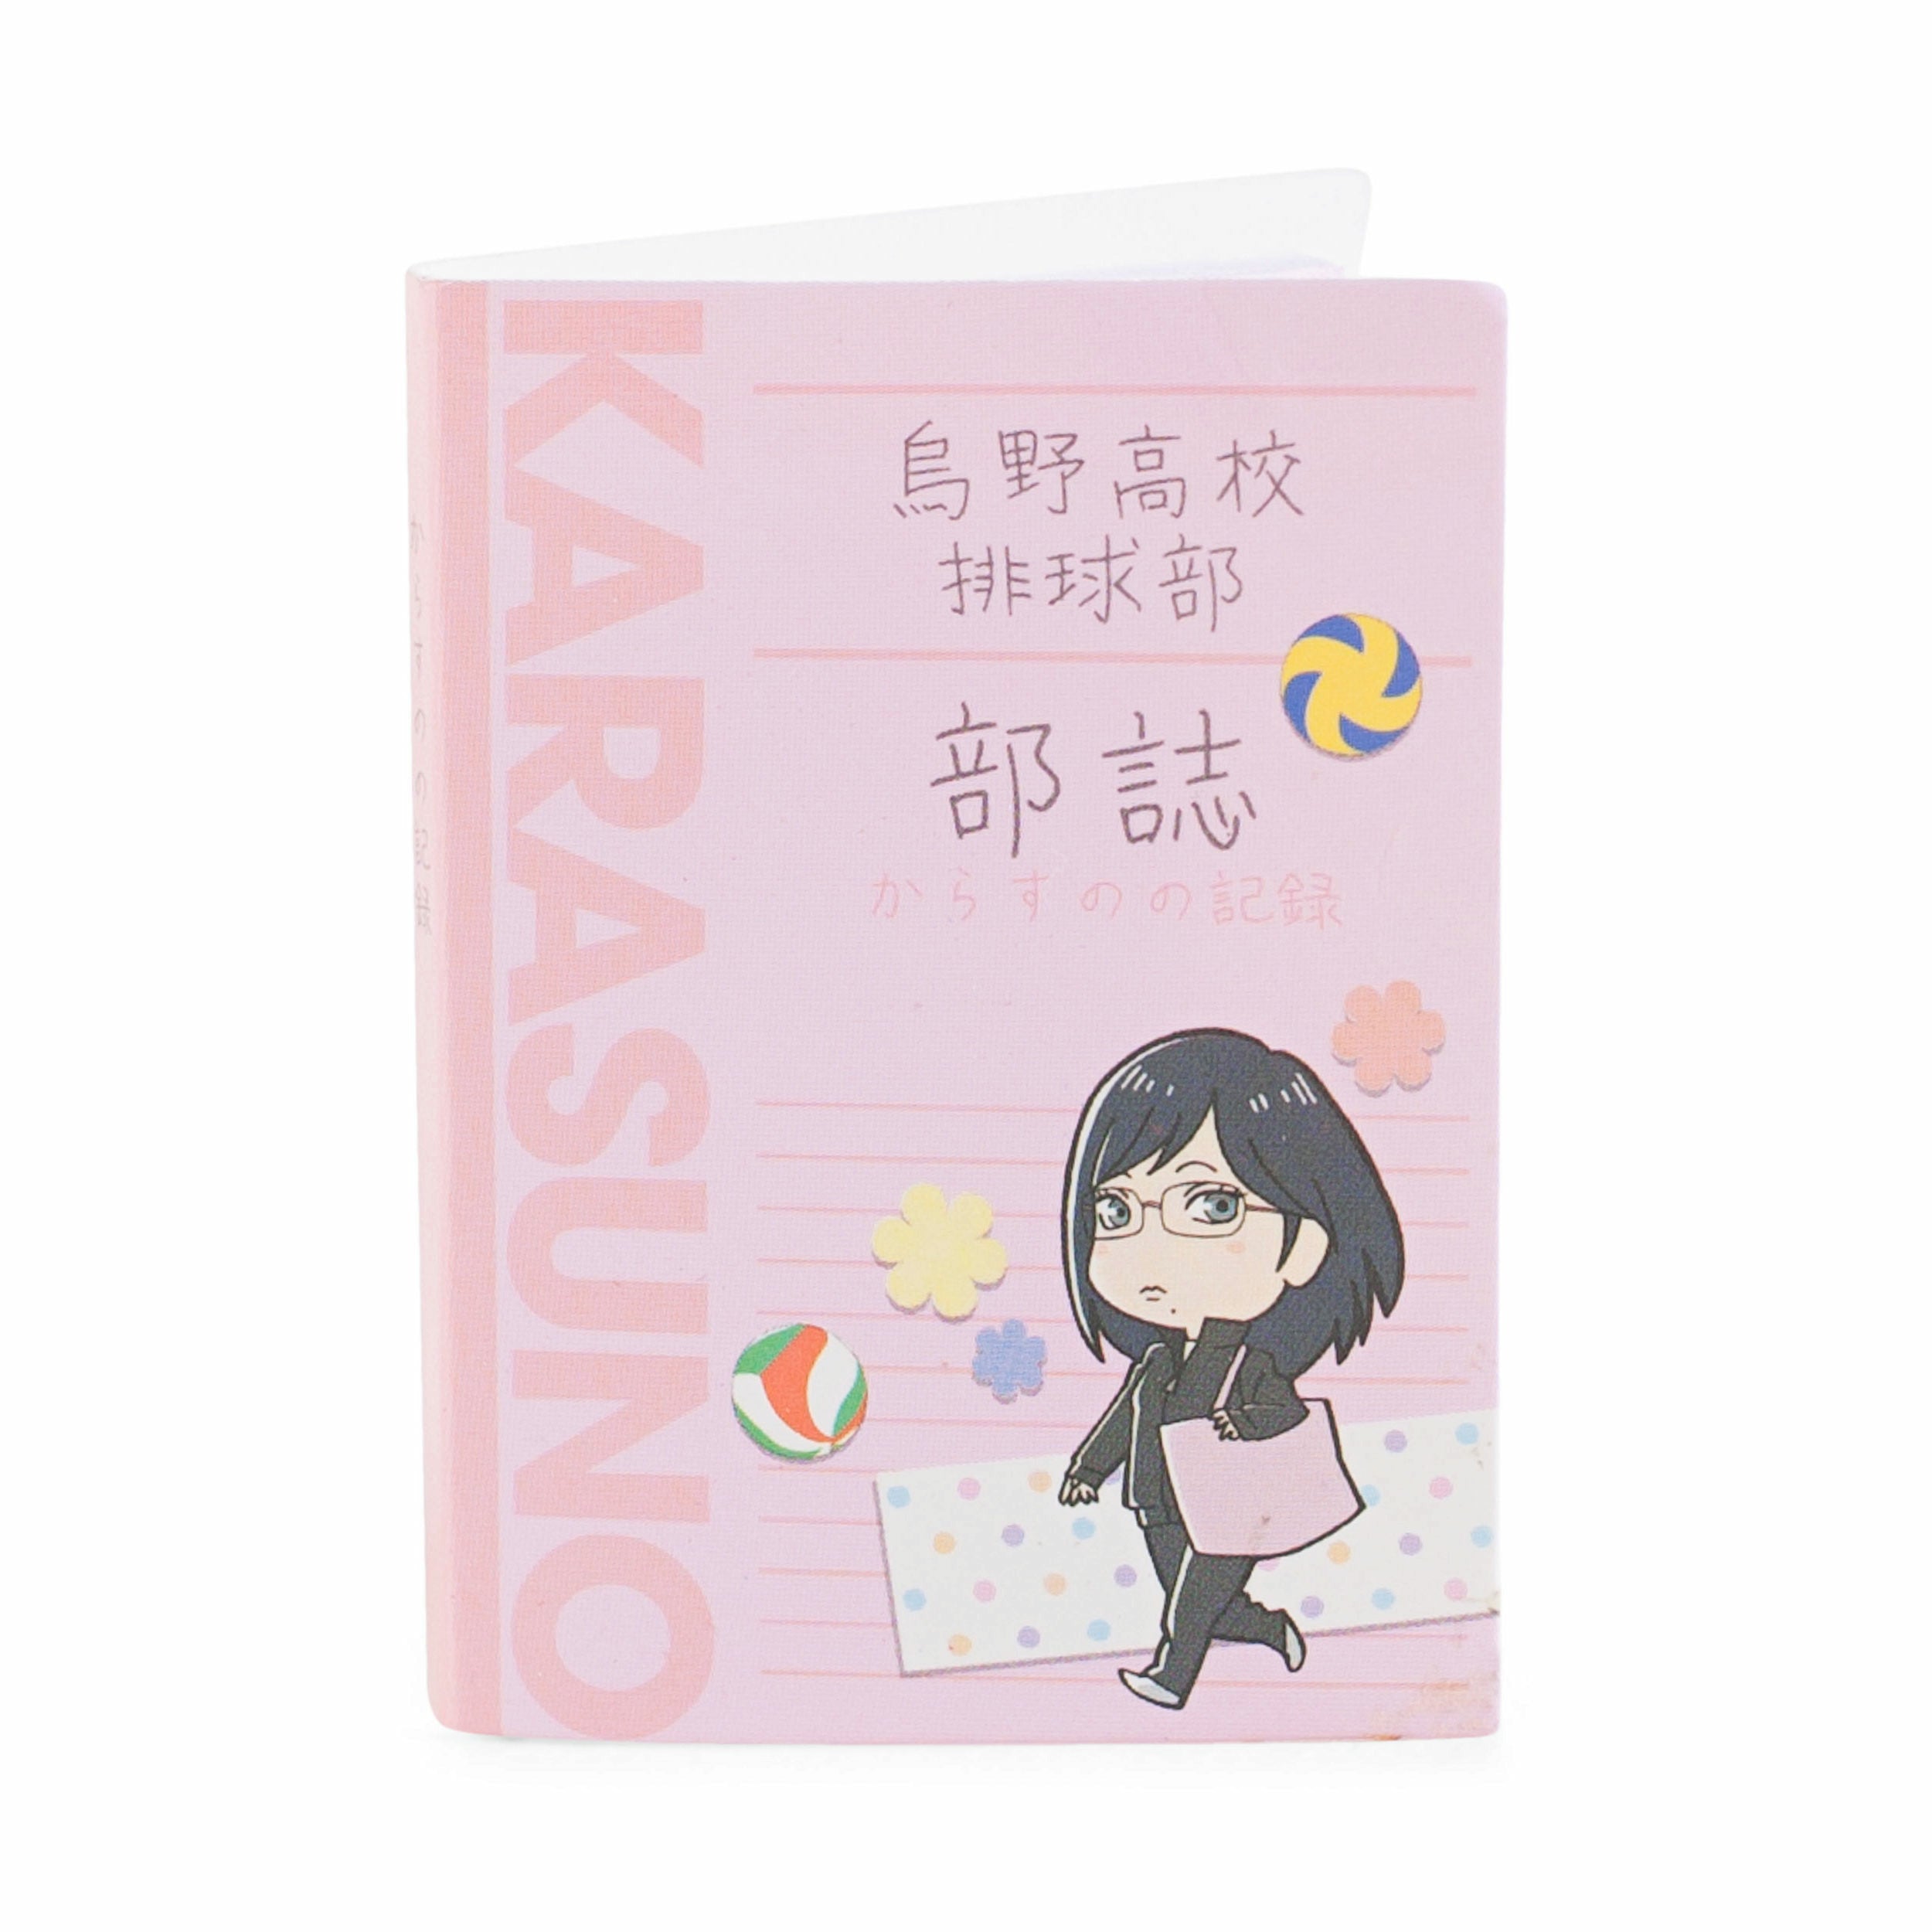 Haikyu!! Karasuno High Cheese Series Kiyoko Ver. Miniature Stationery Set